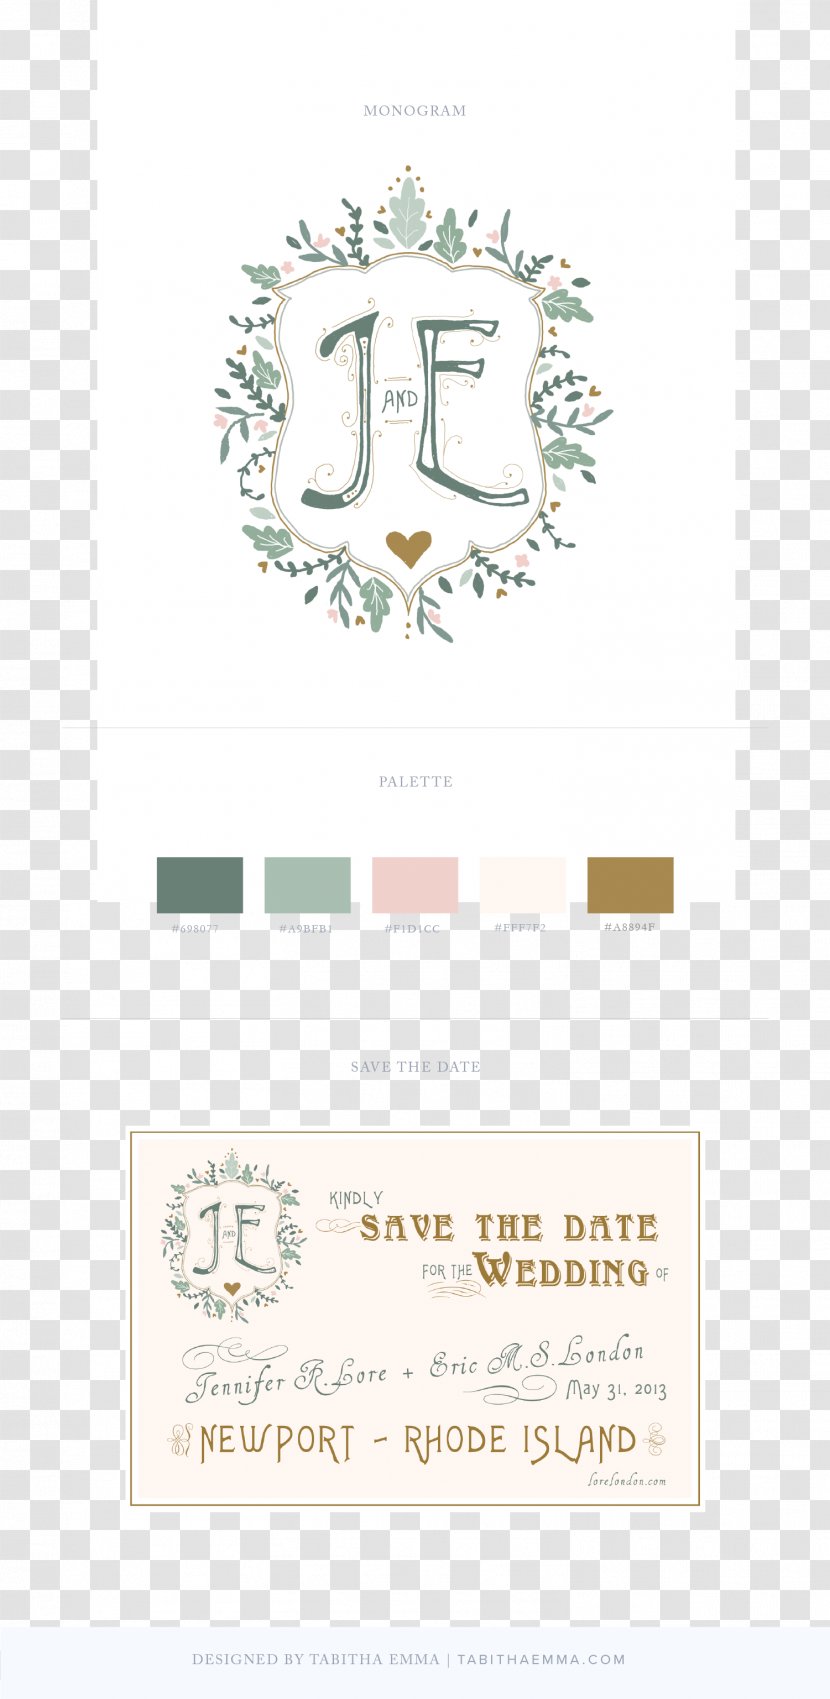 Product Design Logo Paper Brand Font - Diagram - Wedding Details Transparent PNG